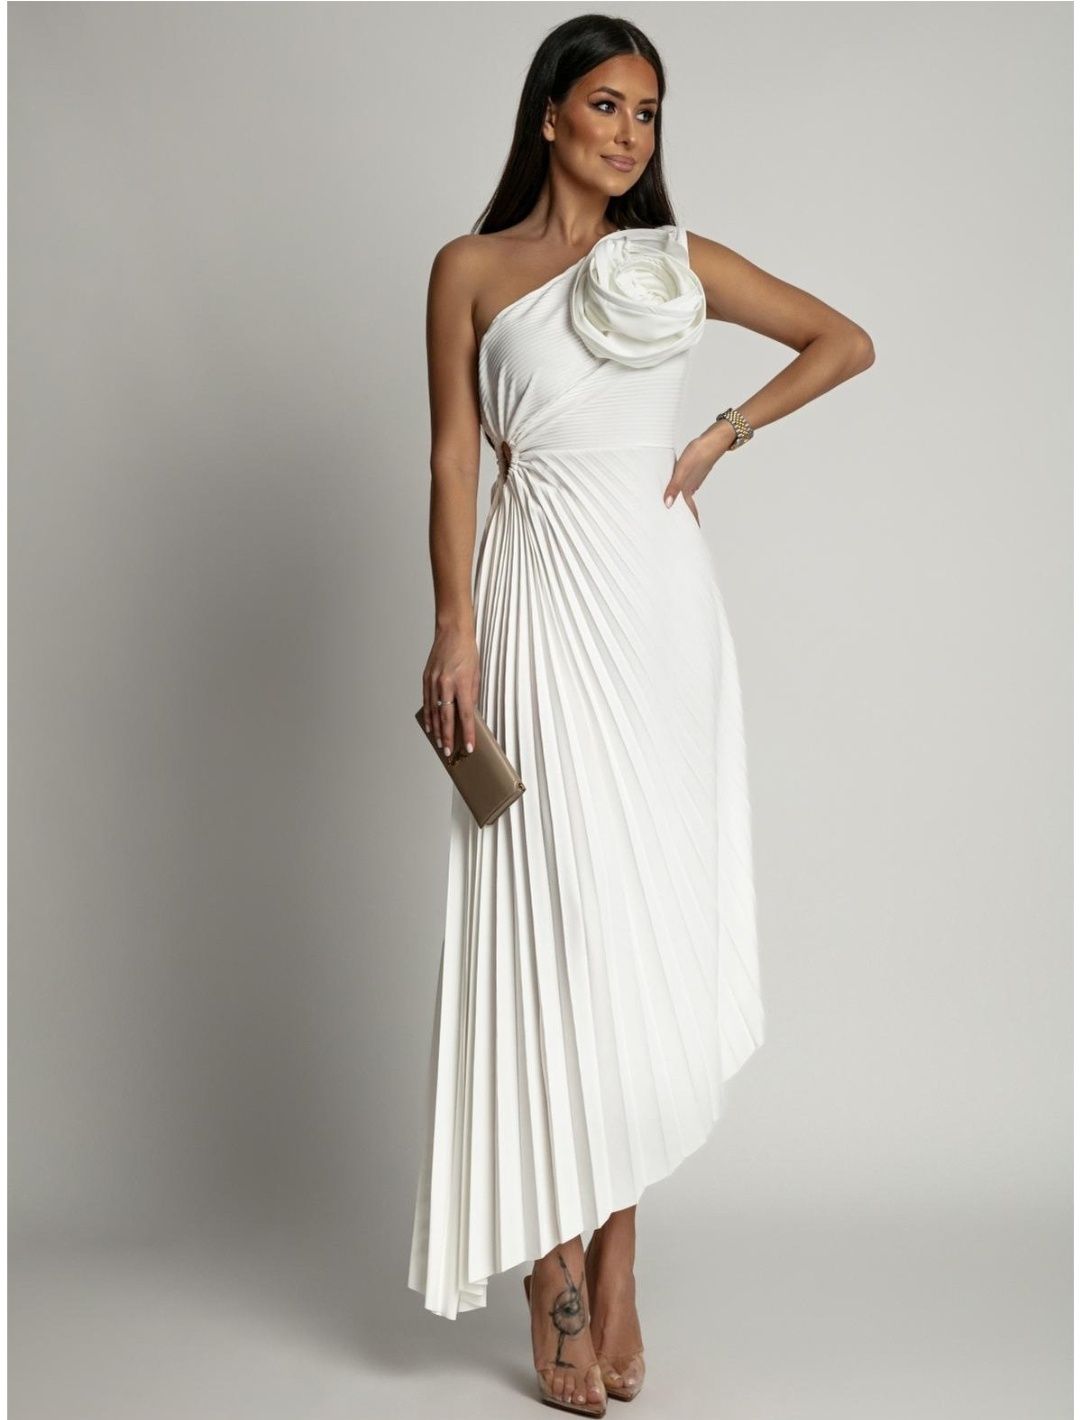 Sukienka biała śmietankowa asymetryczna 36,38 z różą plisowana 40 nowa